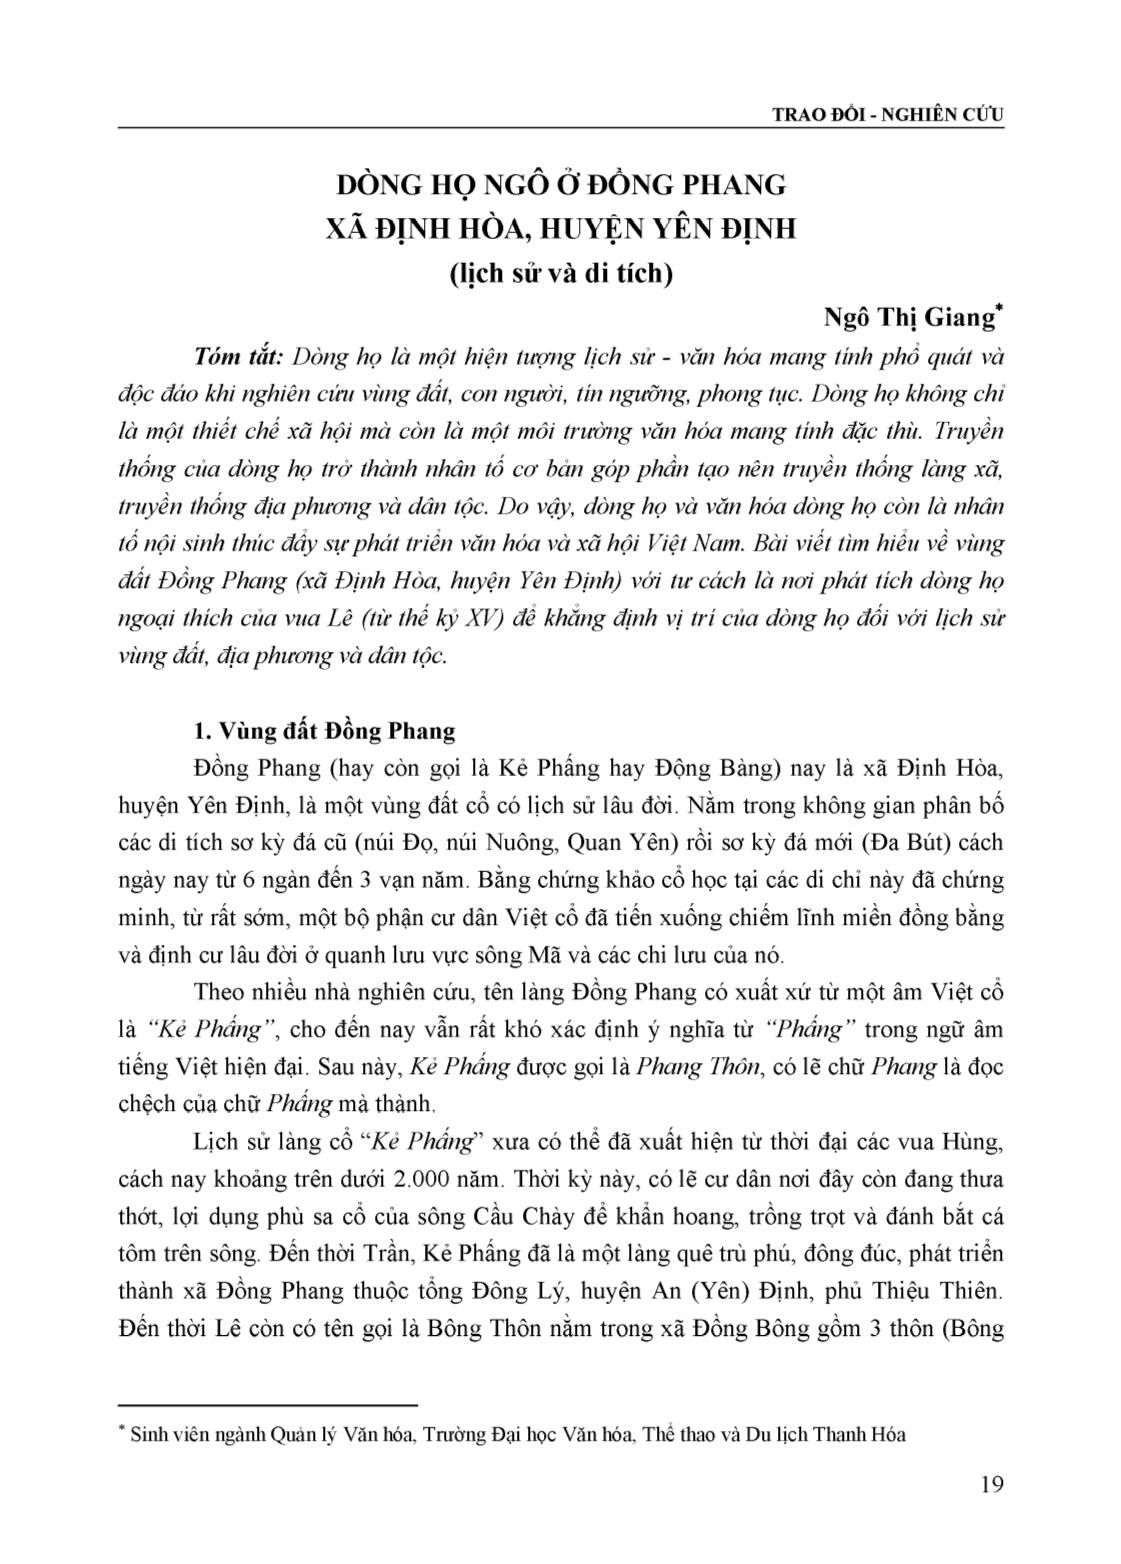 Dòng họ Ngô ở Đồng Phang xã Định Hòa, huyện Yên Định (Lịch sử và di tích) trang 1